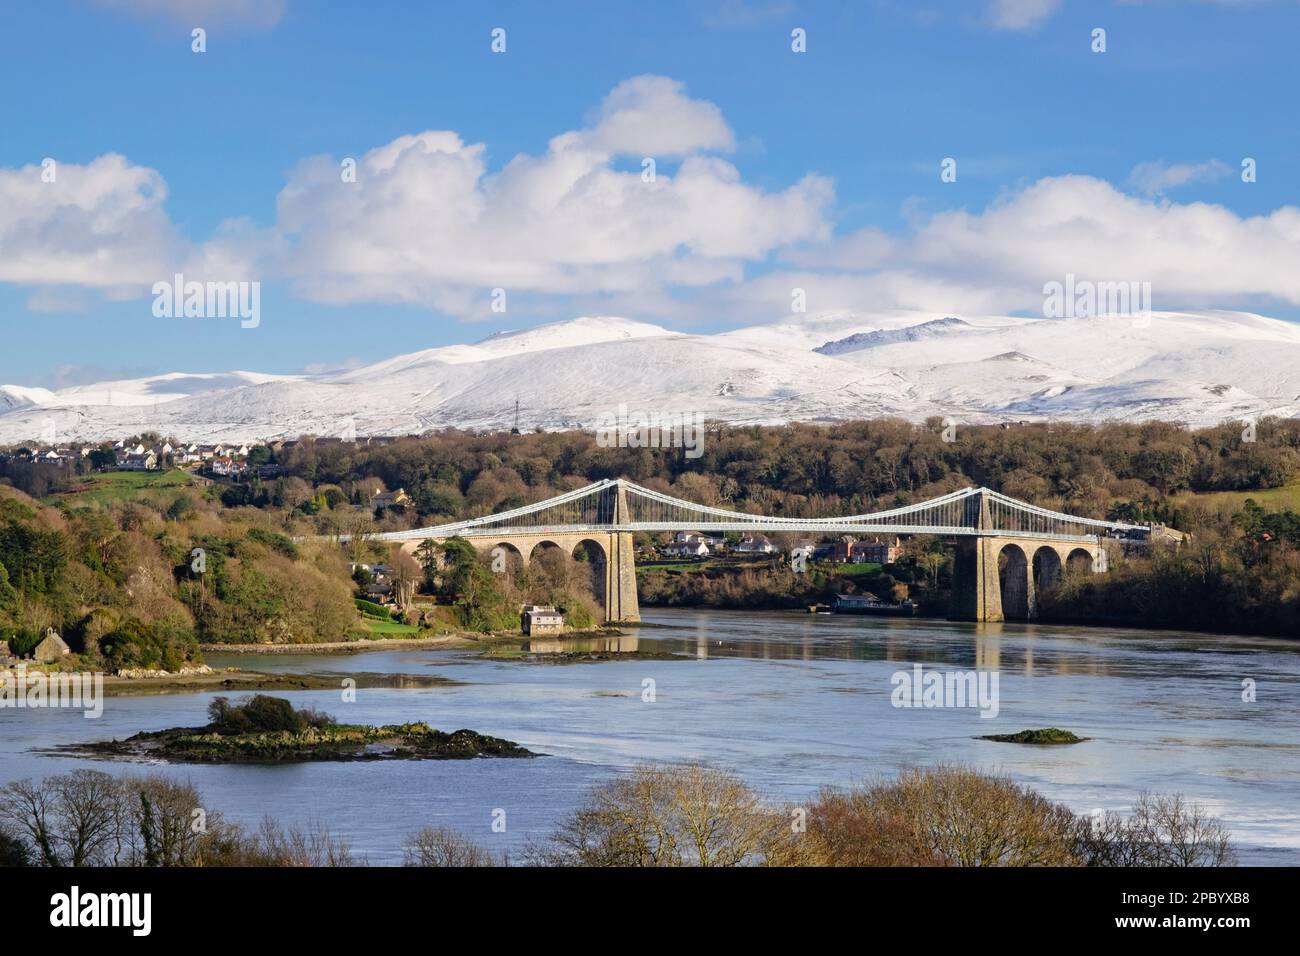 Vue panoramique sur le pont suspendu de Menai traversant le détroit de Menai avec de la neige sur les montagnes en hiver. Pont Menai (Porthaethwy), île d'Anglesey, pays de Galles, Royaume-Uni Banque D'Images